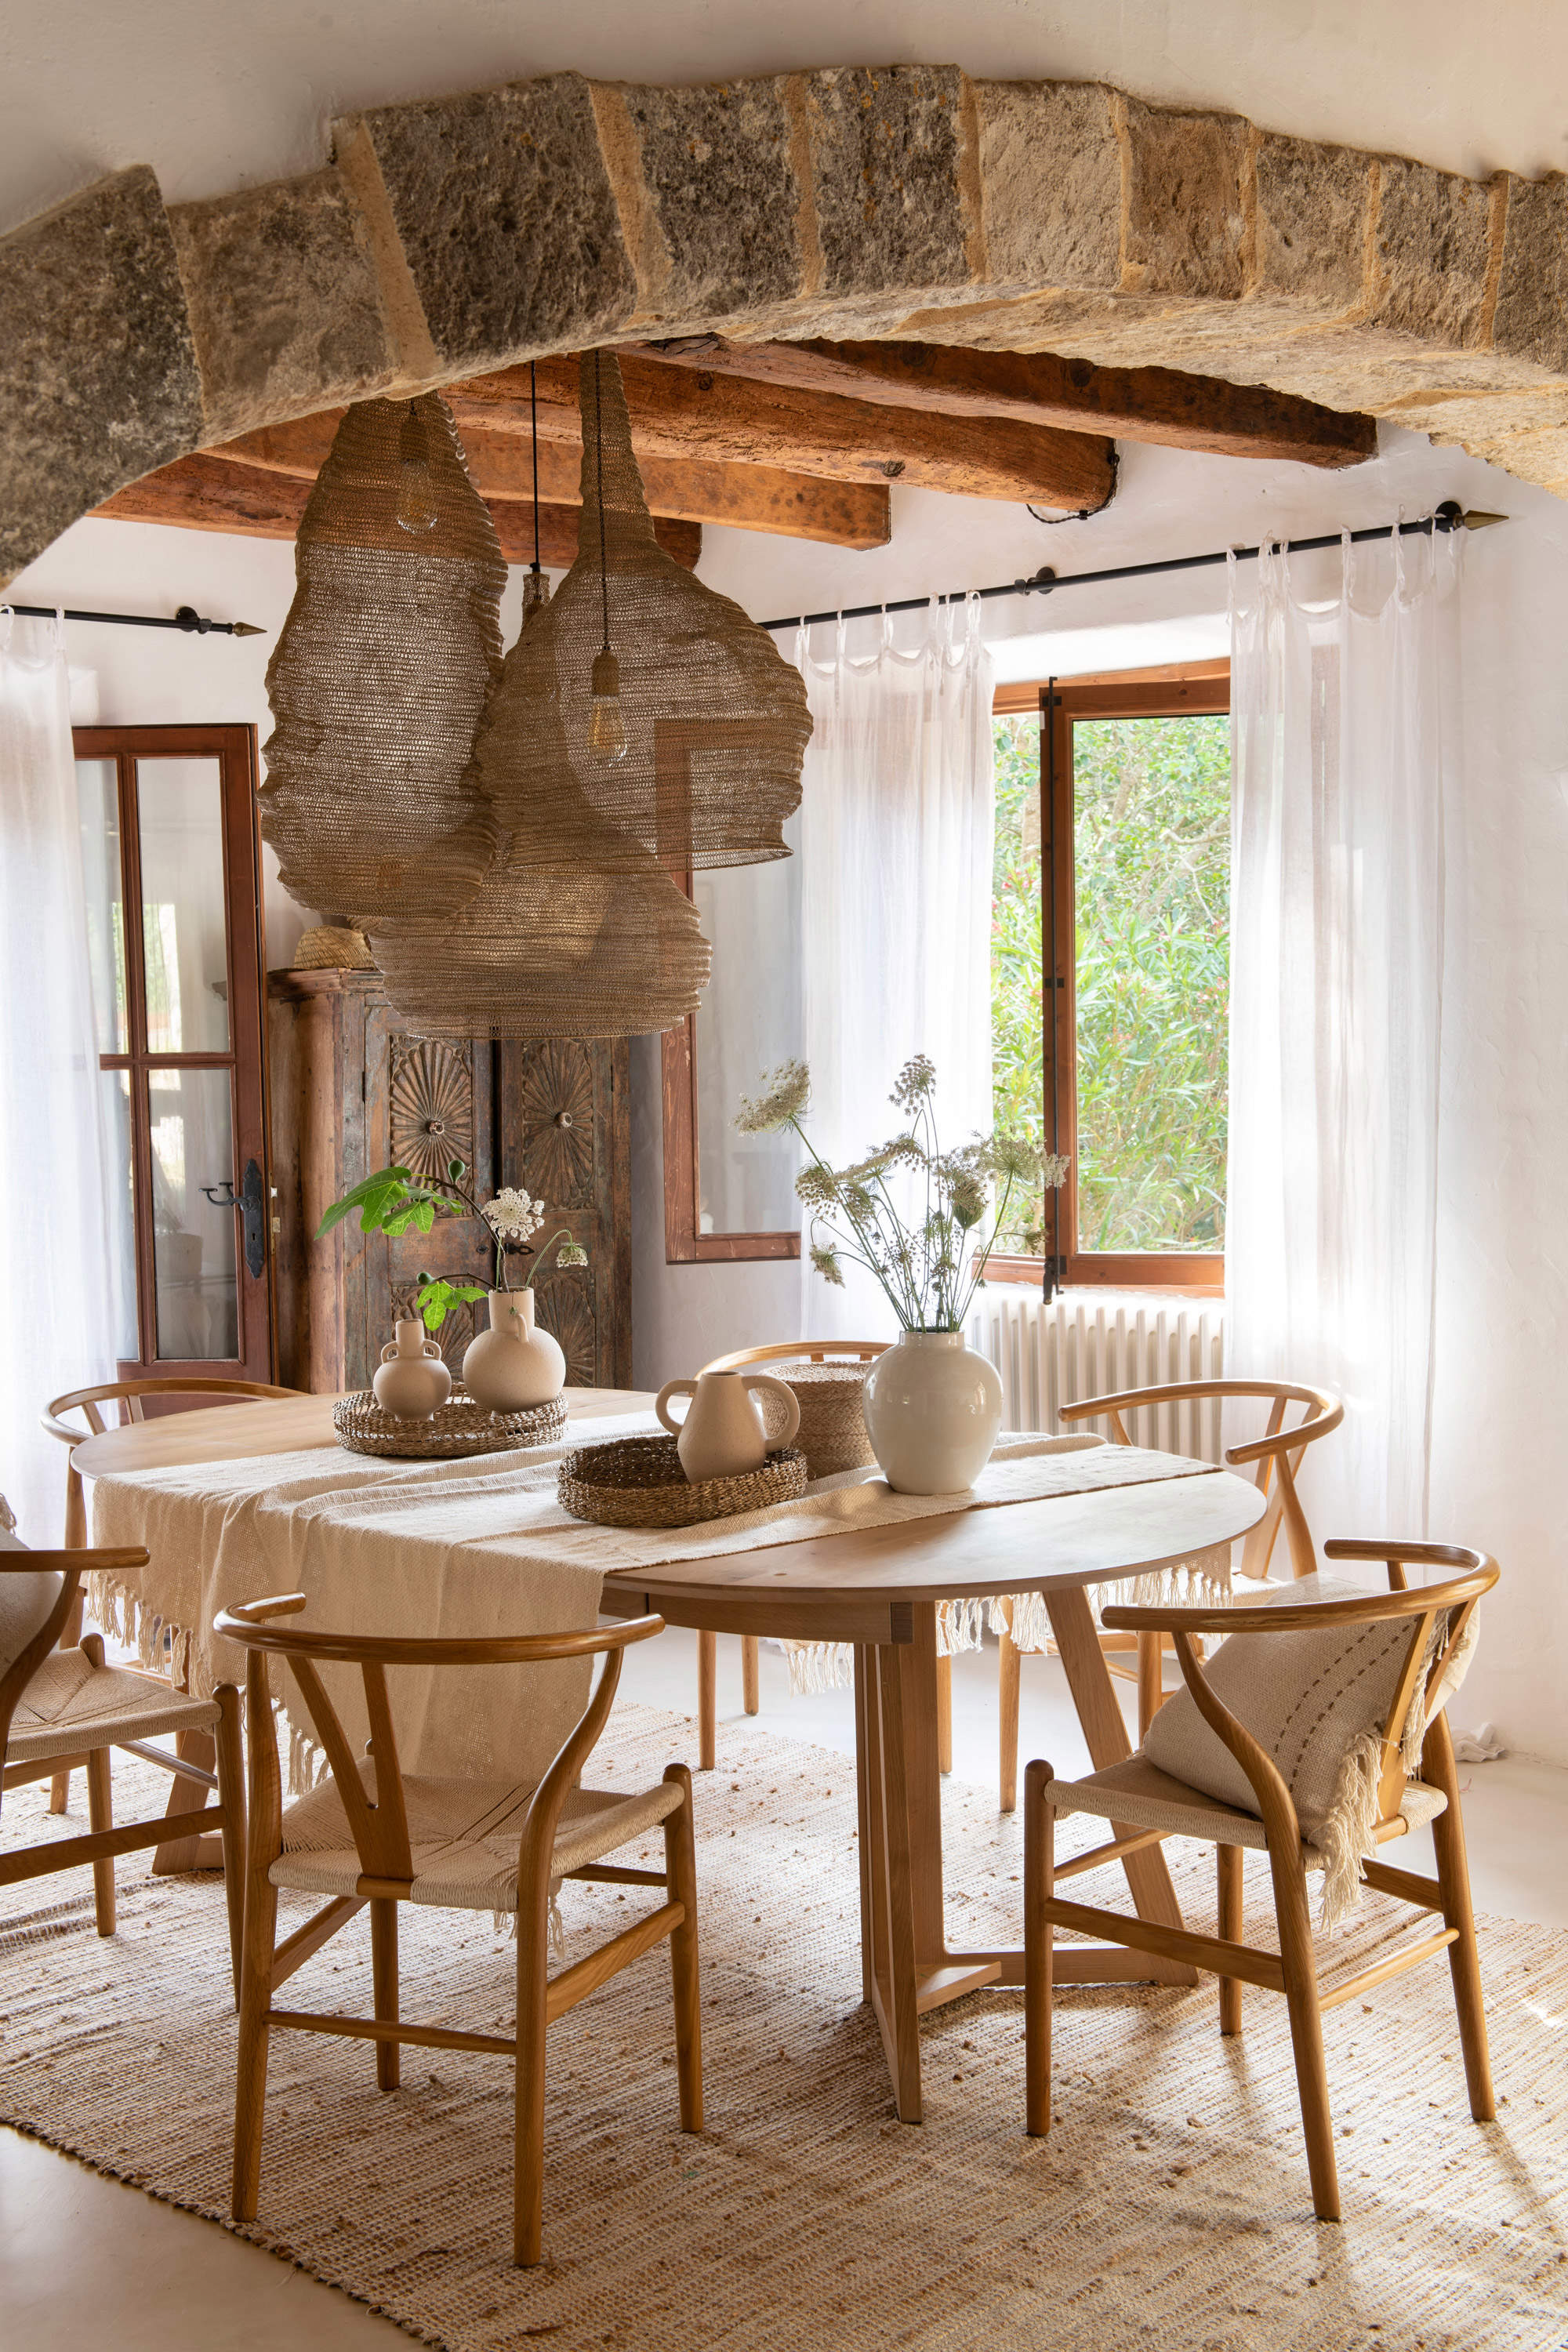 Comedor con muebles de madera y lámparas de techo de formas orgánicas.